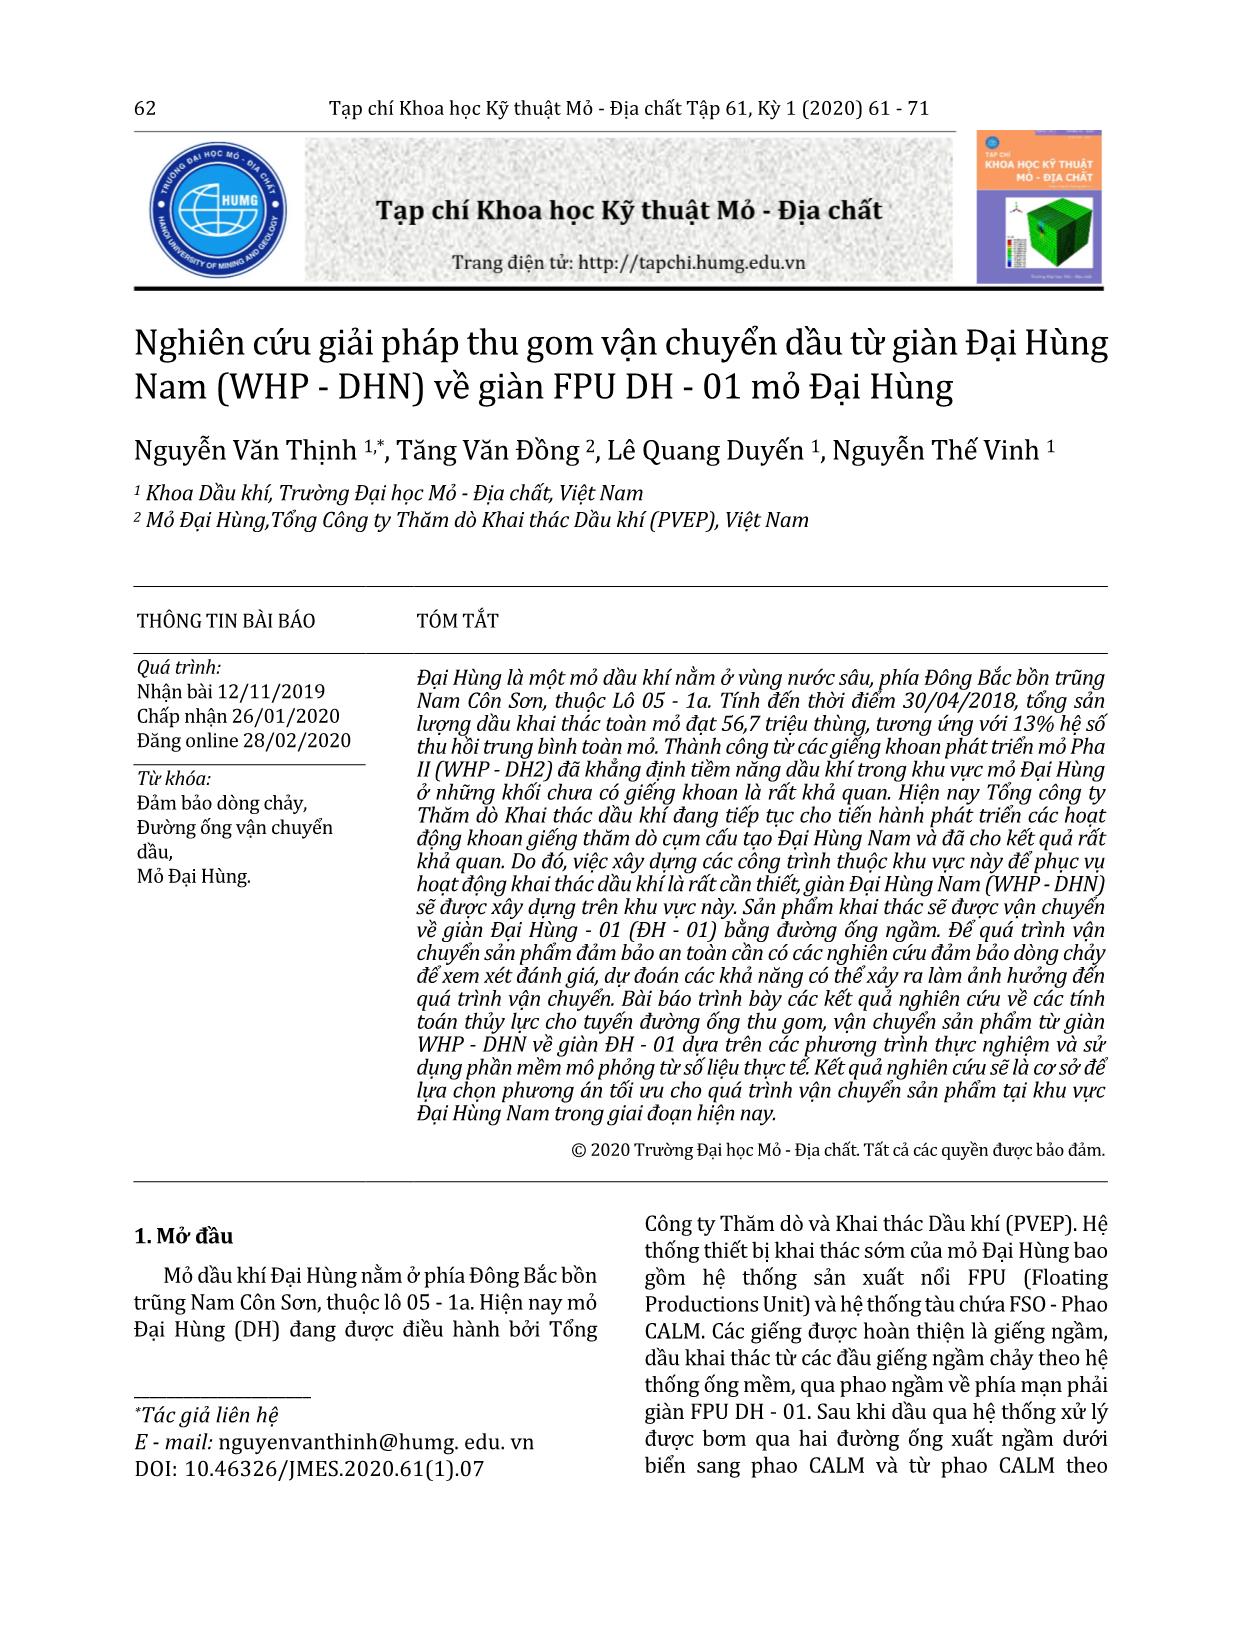 Nghiên cứu giải pháp thu gom vận chuyển dầu từ giàn Đại Hùng Nam (WHP - DHN) về giàn FPU DH - 01 mỏ Đại Hùng trang 2